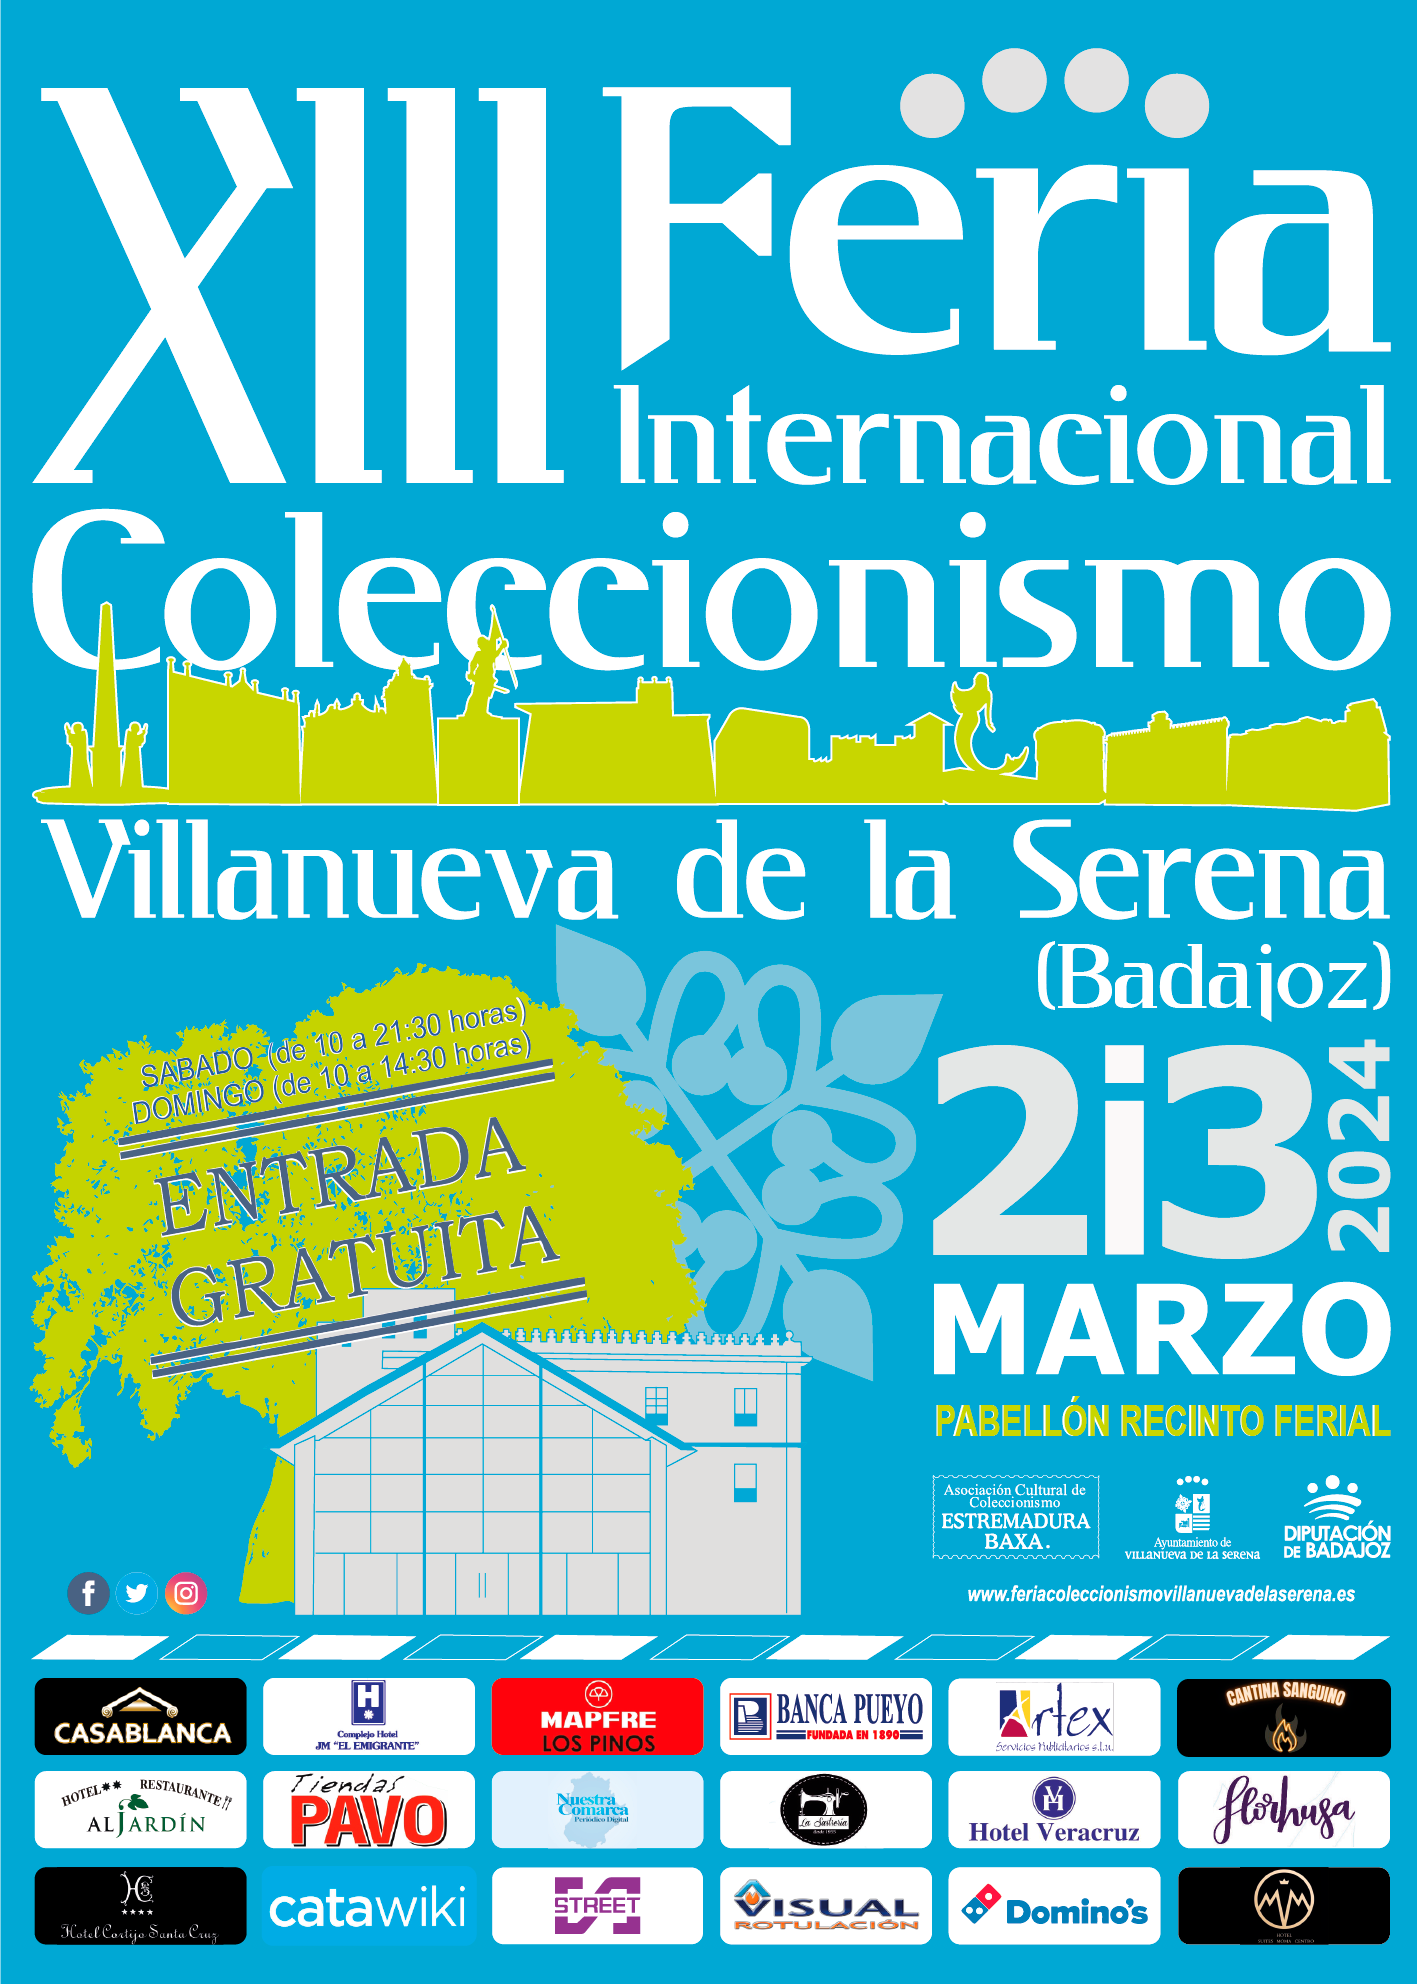 XII Feria Internacional de Coleccionismo de Villanueva de la Serena